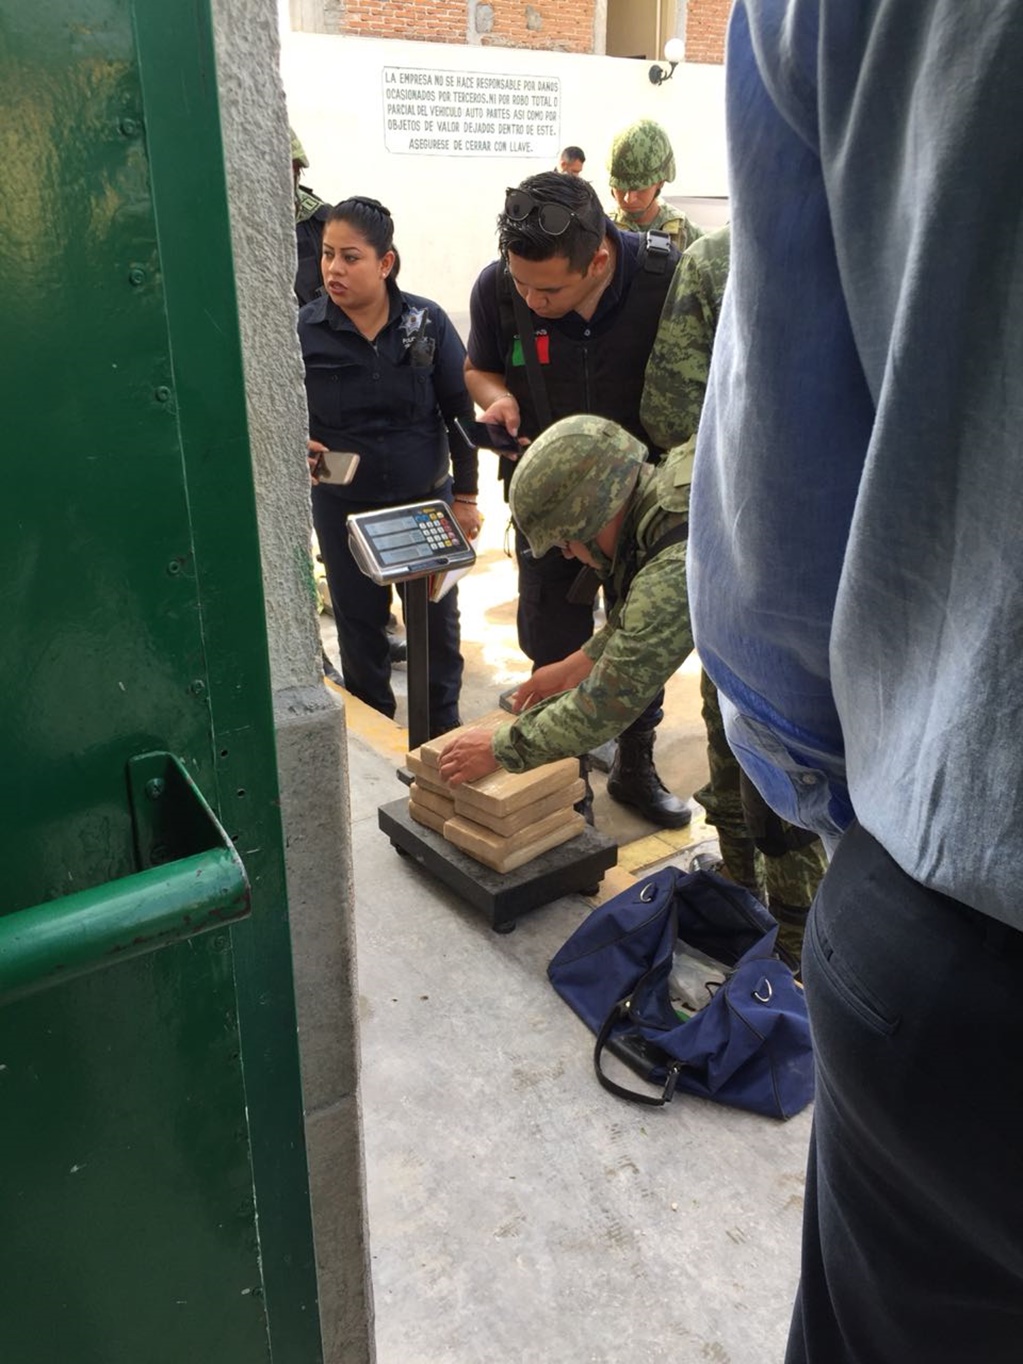 Con ayuda de perros, detectan cocaína oculta en una camioneta en Chiapas